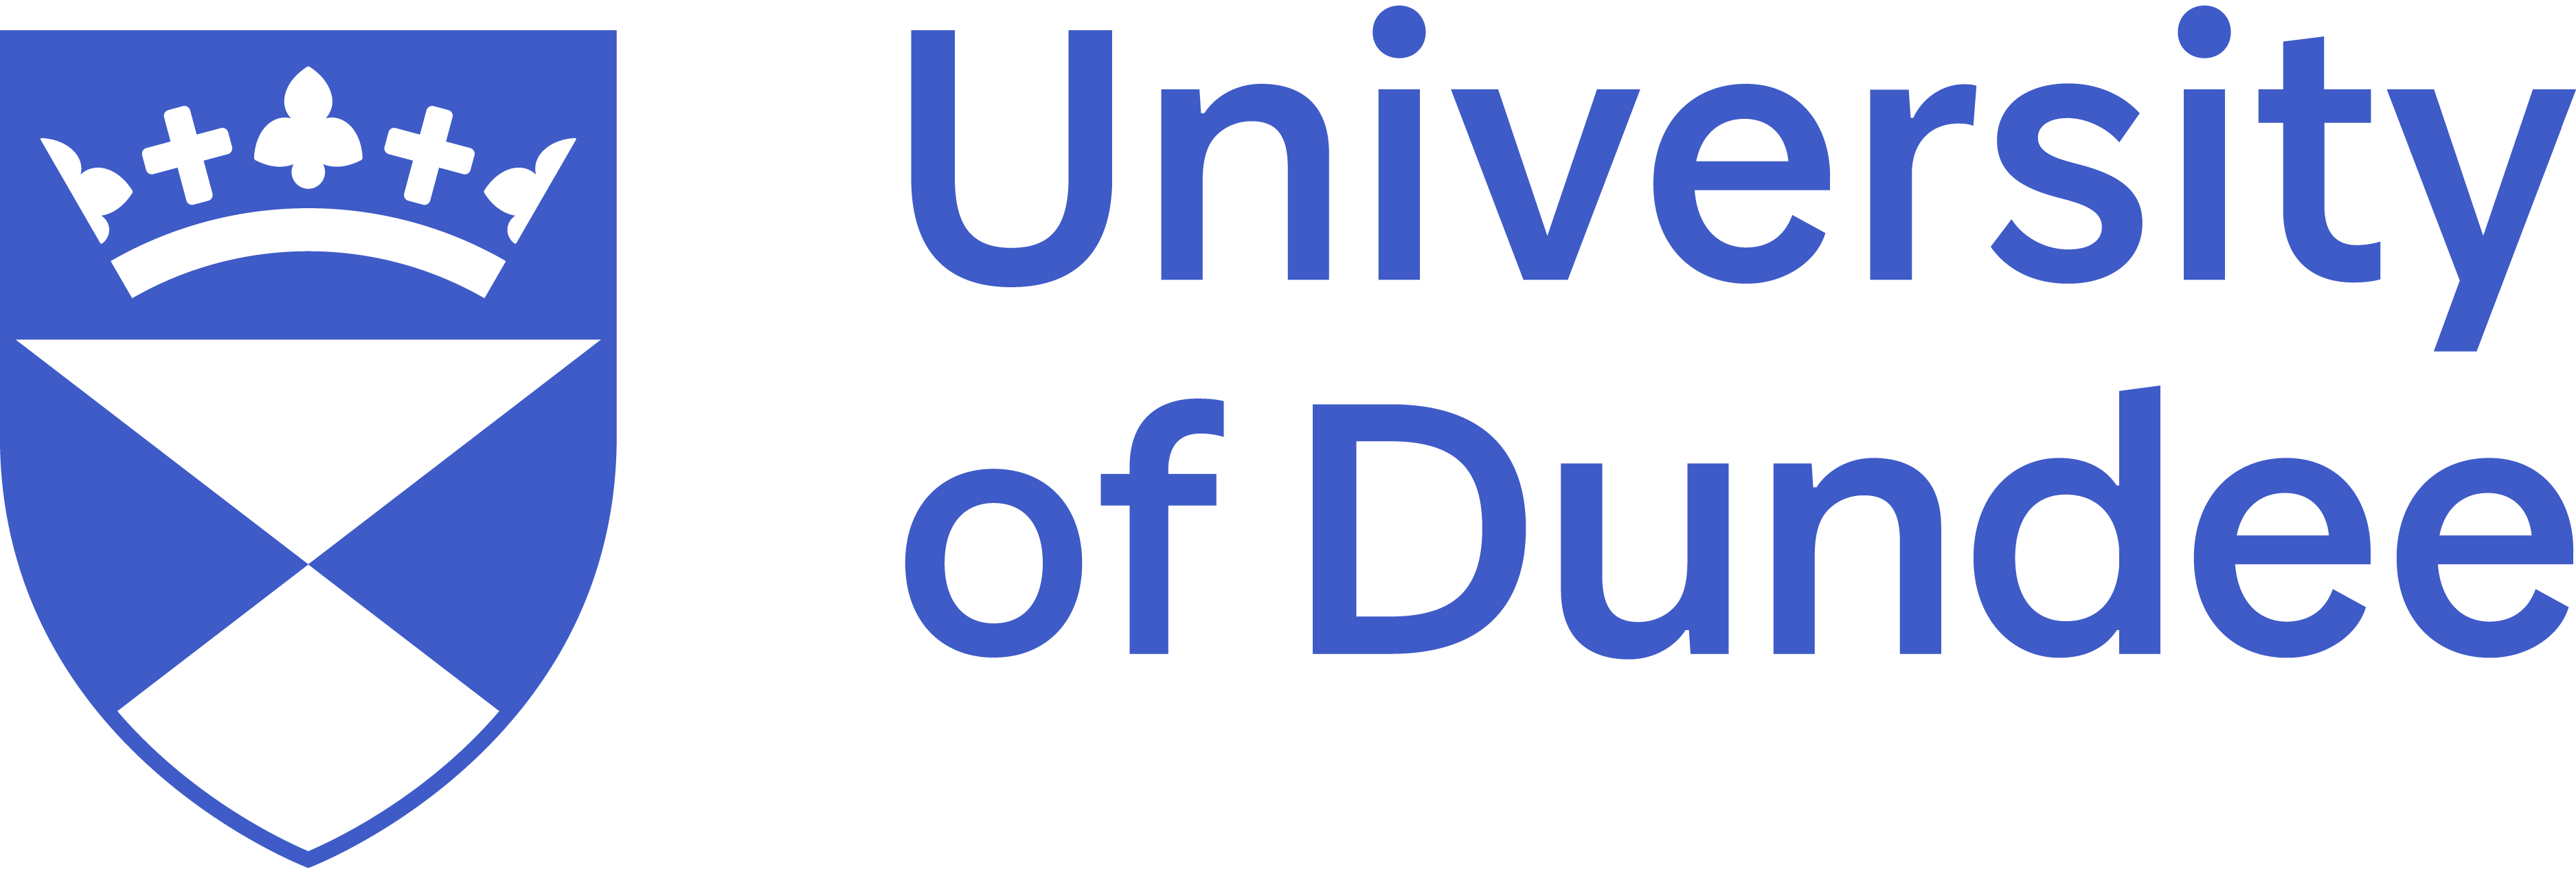 Dundee Logo - University of Dundee (logo) -